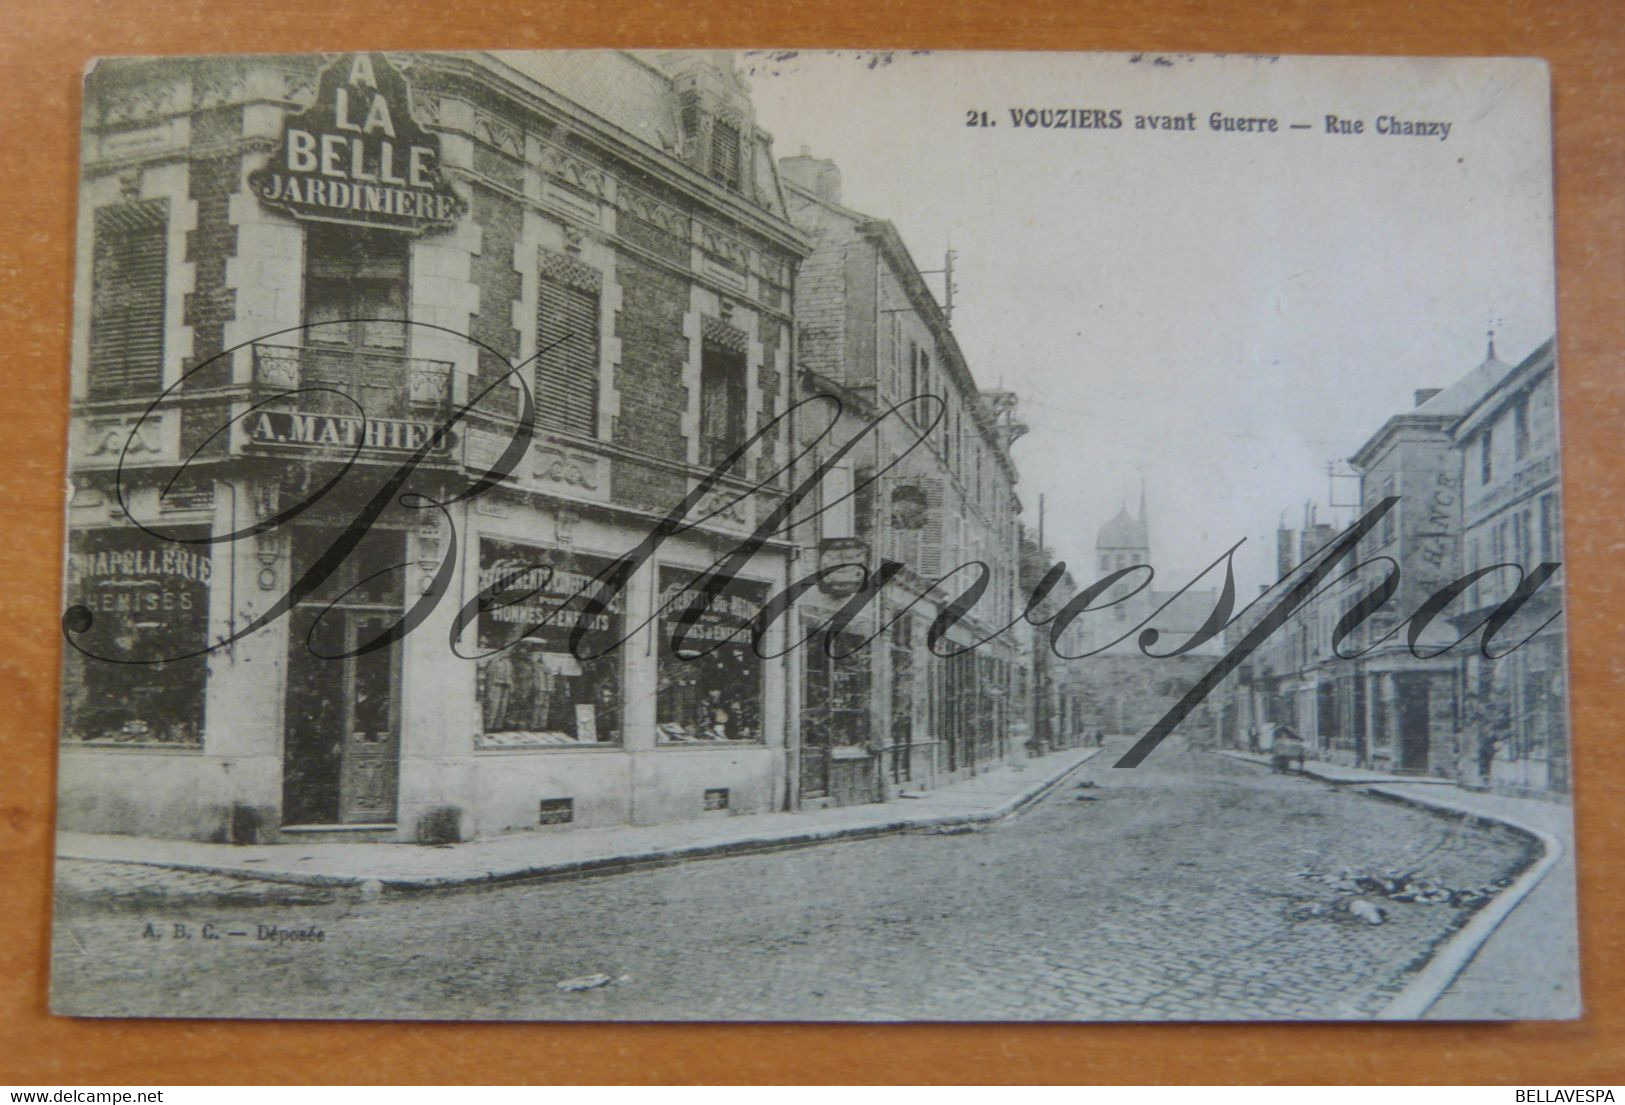 Vouziers. Avant Guerre. Rue Chanzy.  A La Belle Jardinierre. Propr A Mathieu N°21-D08 - Vouziers